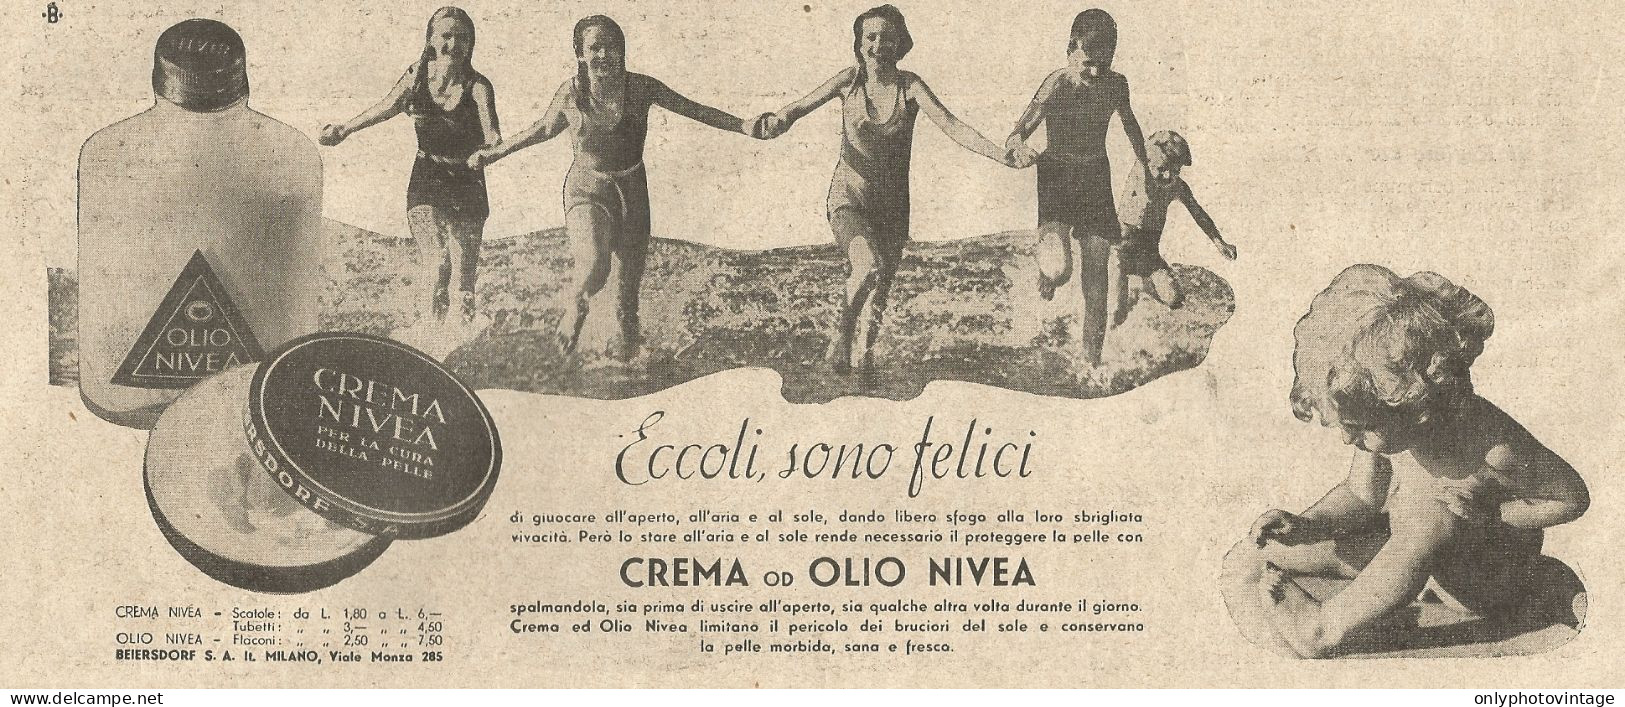 Crema NIVEA - Illustrazione - Pubblicità Del 1934 - Old Advertising - Werbung